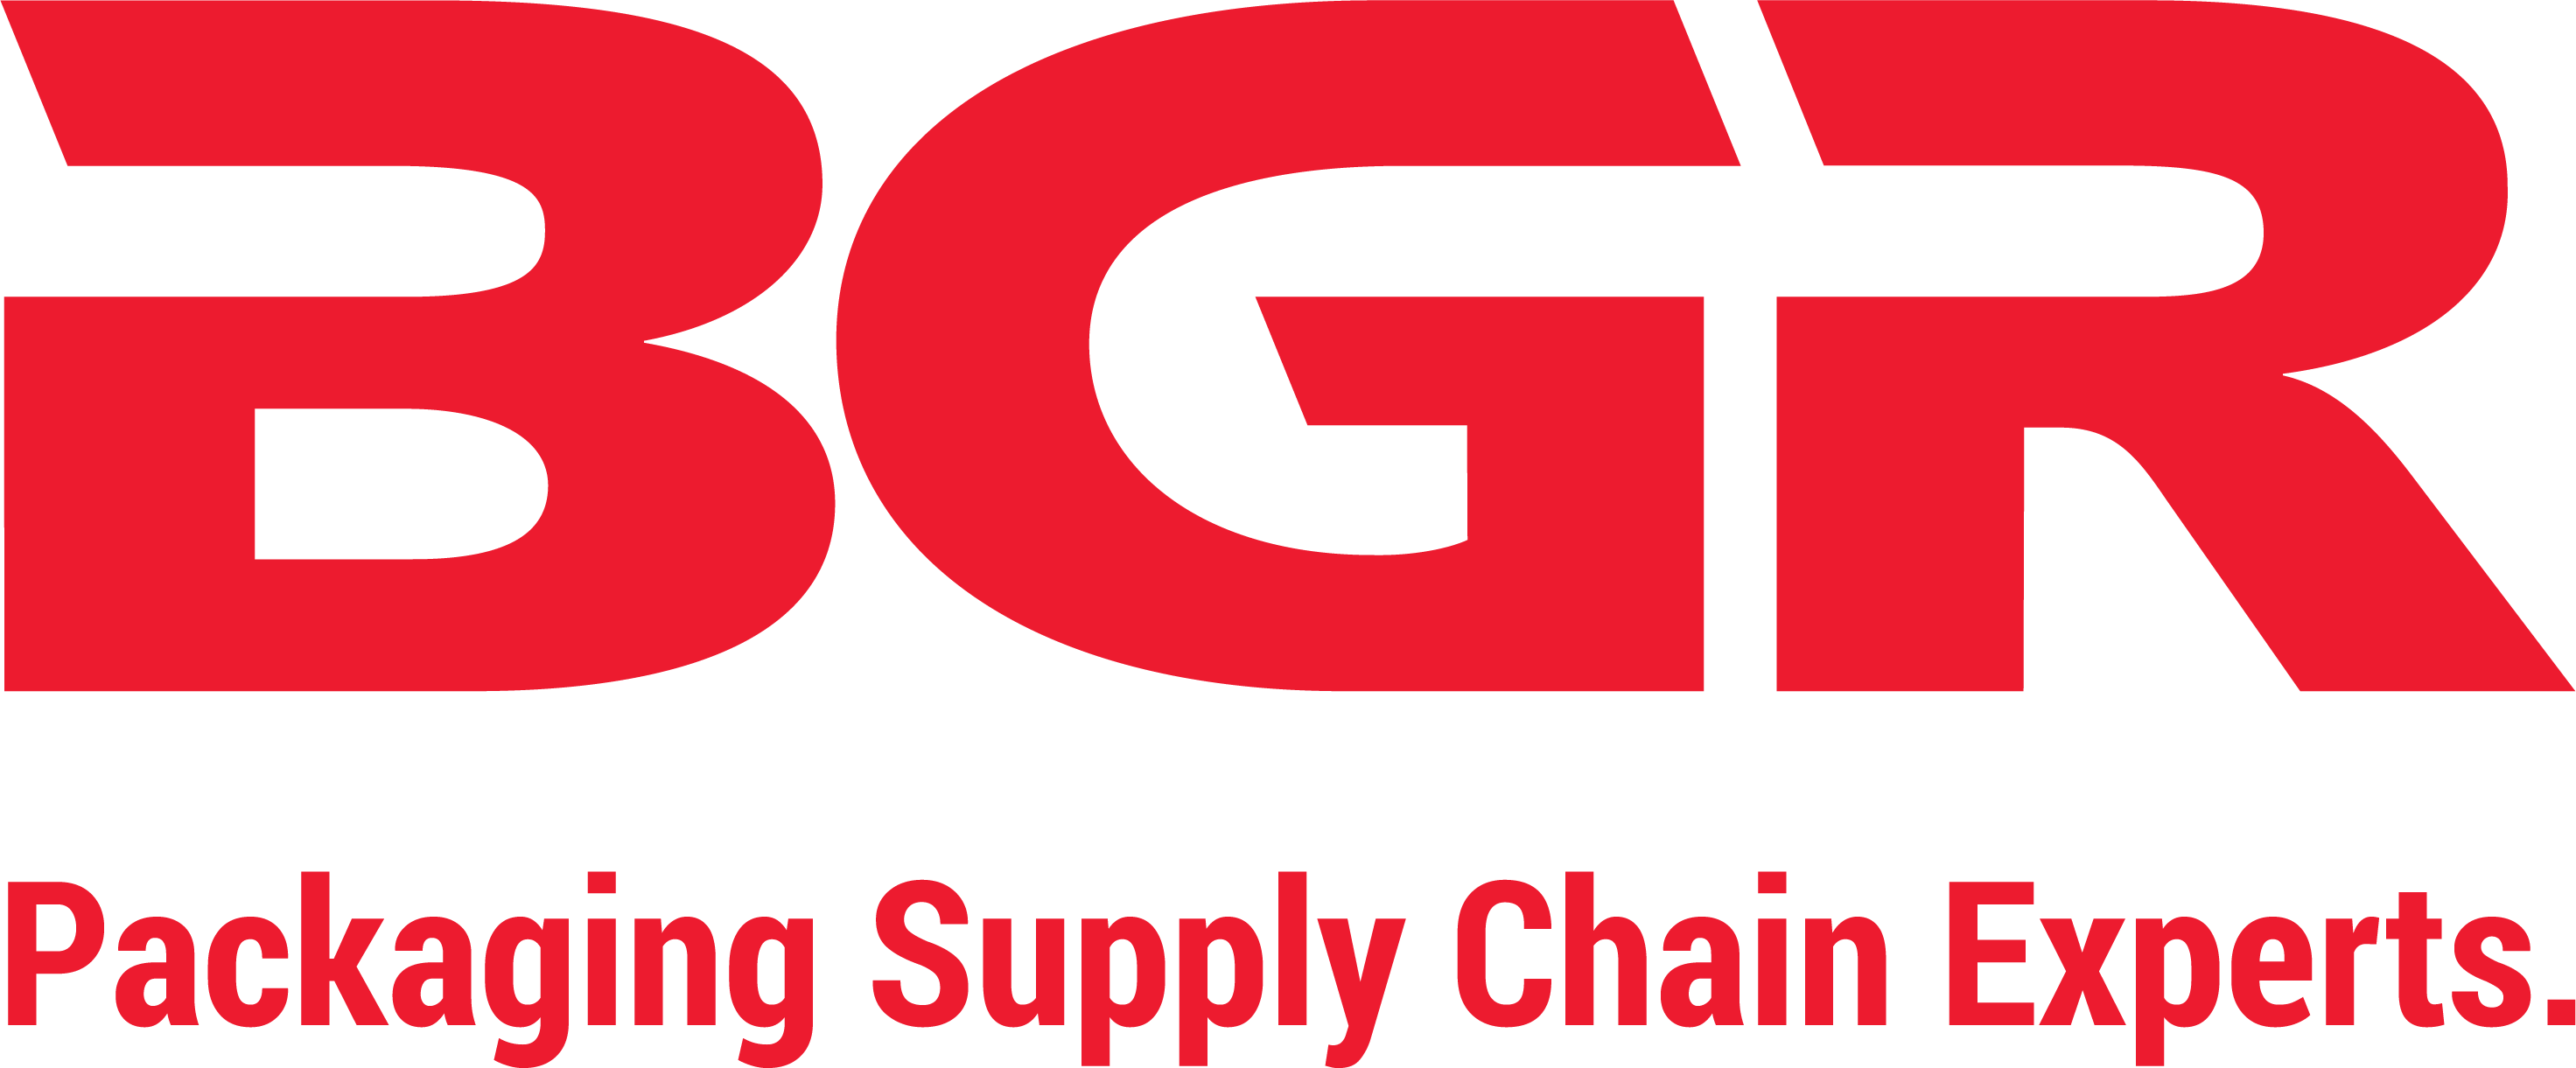 BGR logo